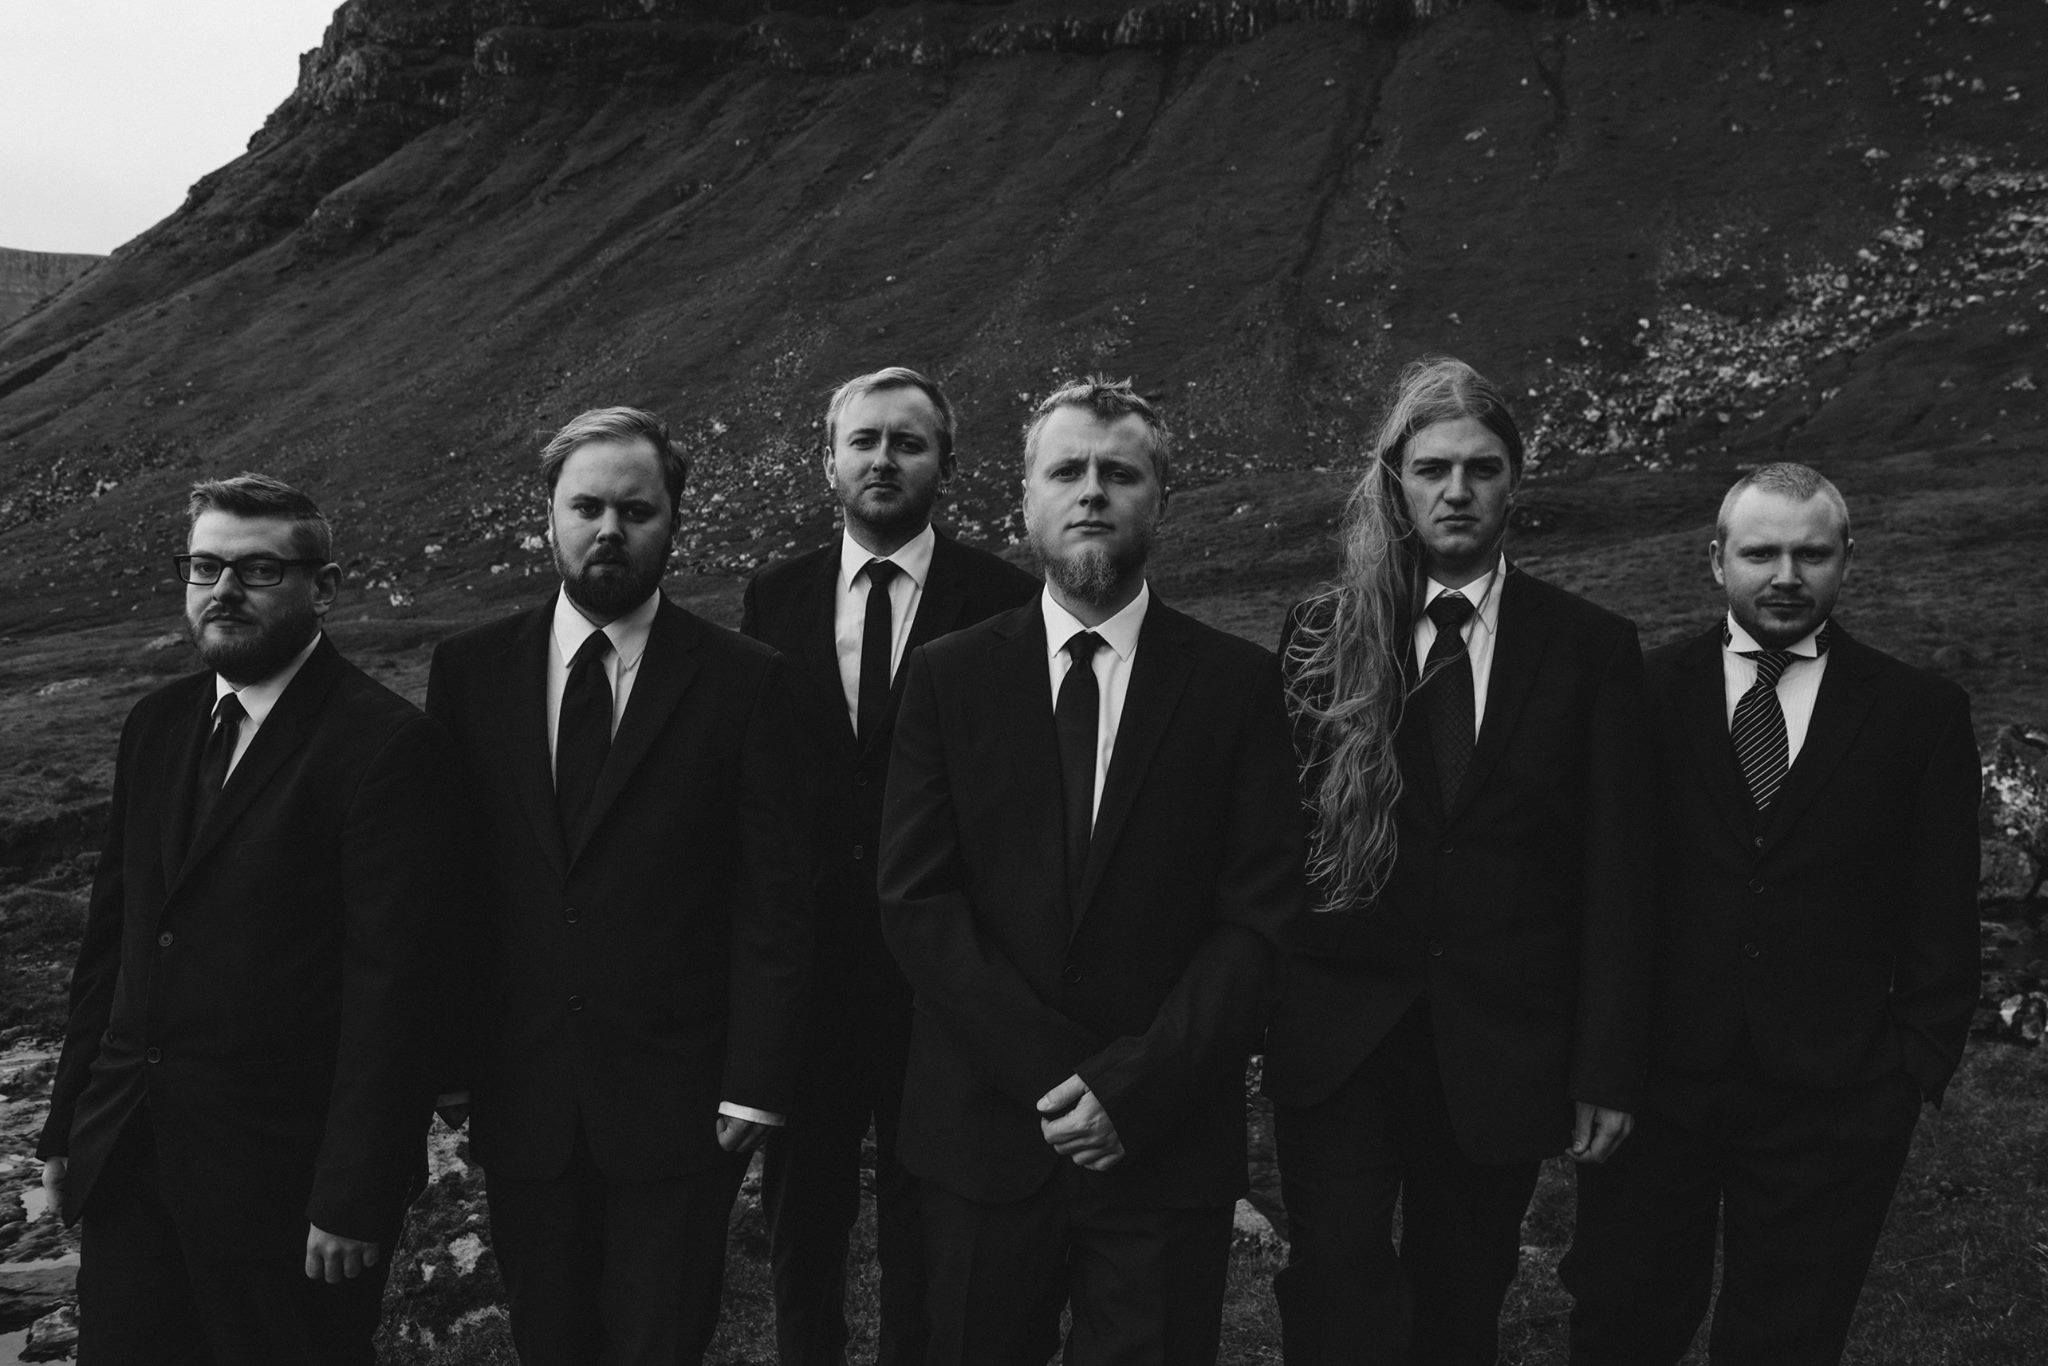 Hamferð veröffentlichen dritte Single 'Stygd' vom "Támsins Likam"-Album